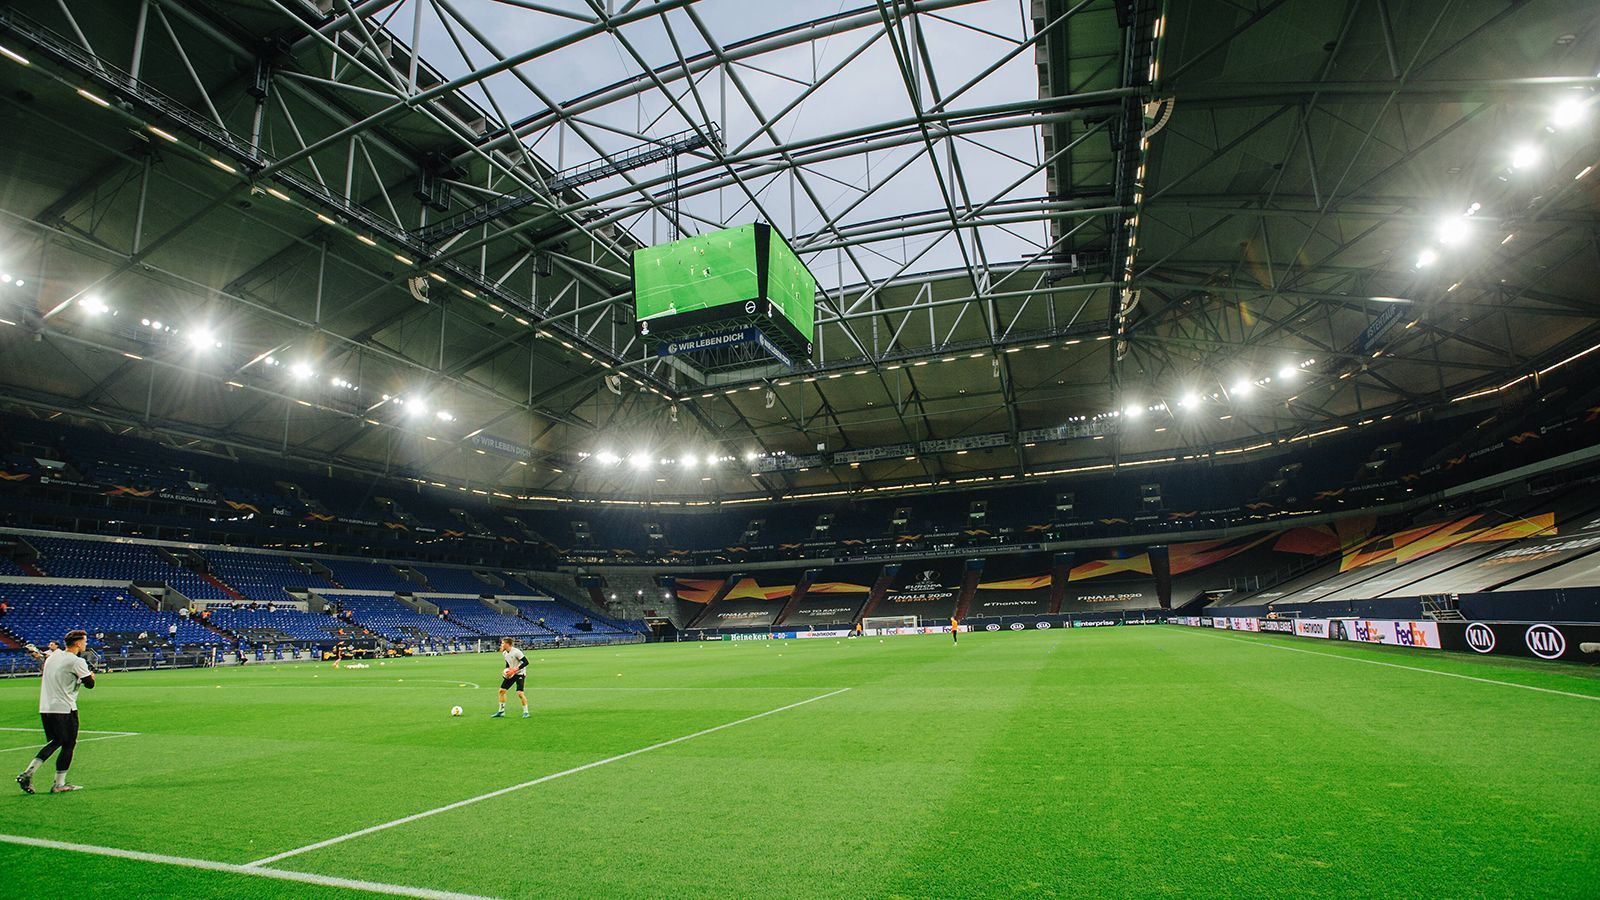 
                <strong>FC Schalke 04</strong><br>
                &#x2022; Aktueller Name: Veltins-Arena<br>&#x2022; Eröffnung des Stadions: August 2001<br>&#x2022; Altes Stadion: Gelsenkirchener Parkstadion<br>
              